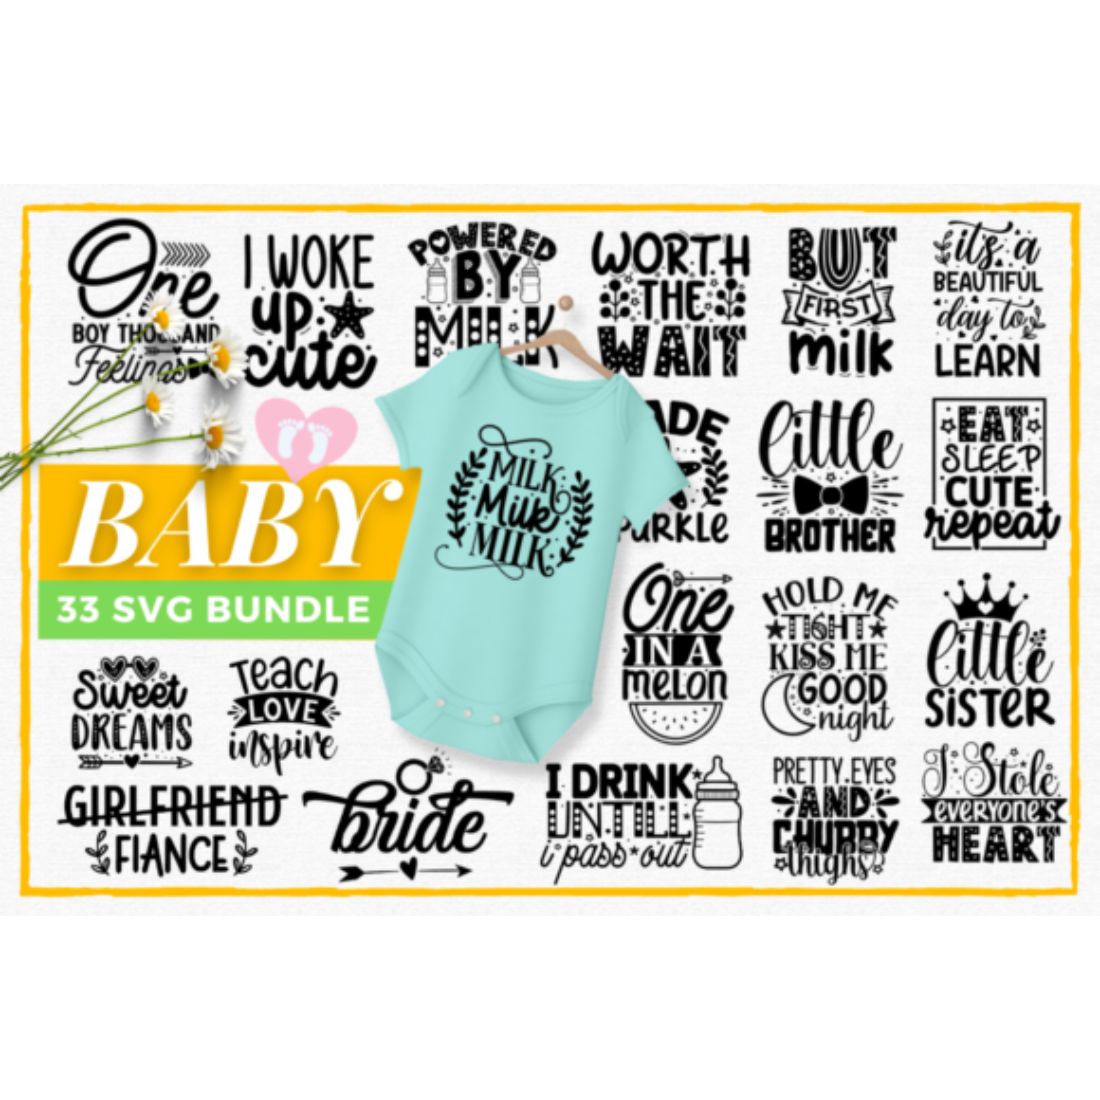 Baby SVG Bundle Design cover image.